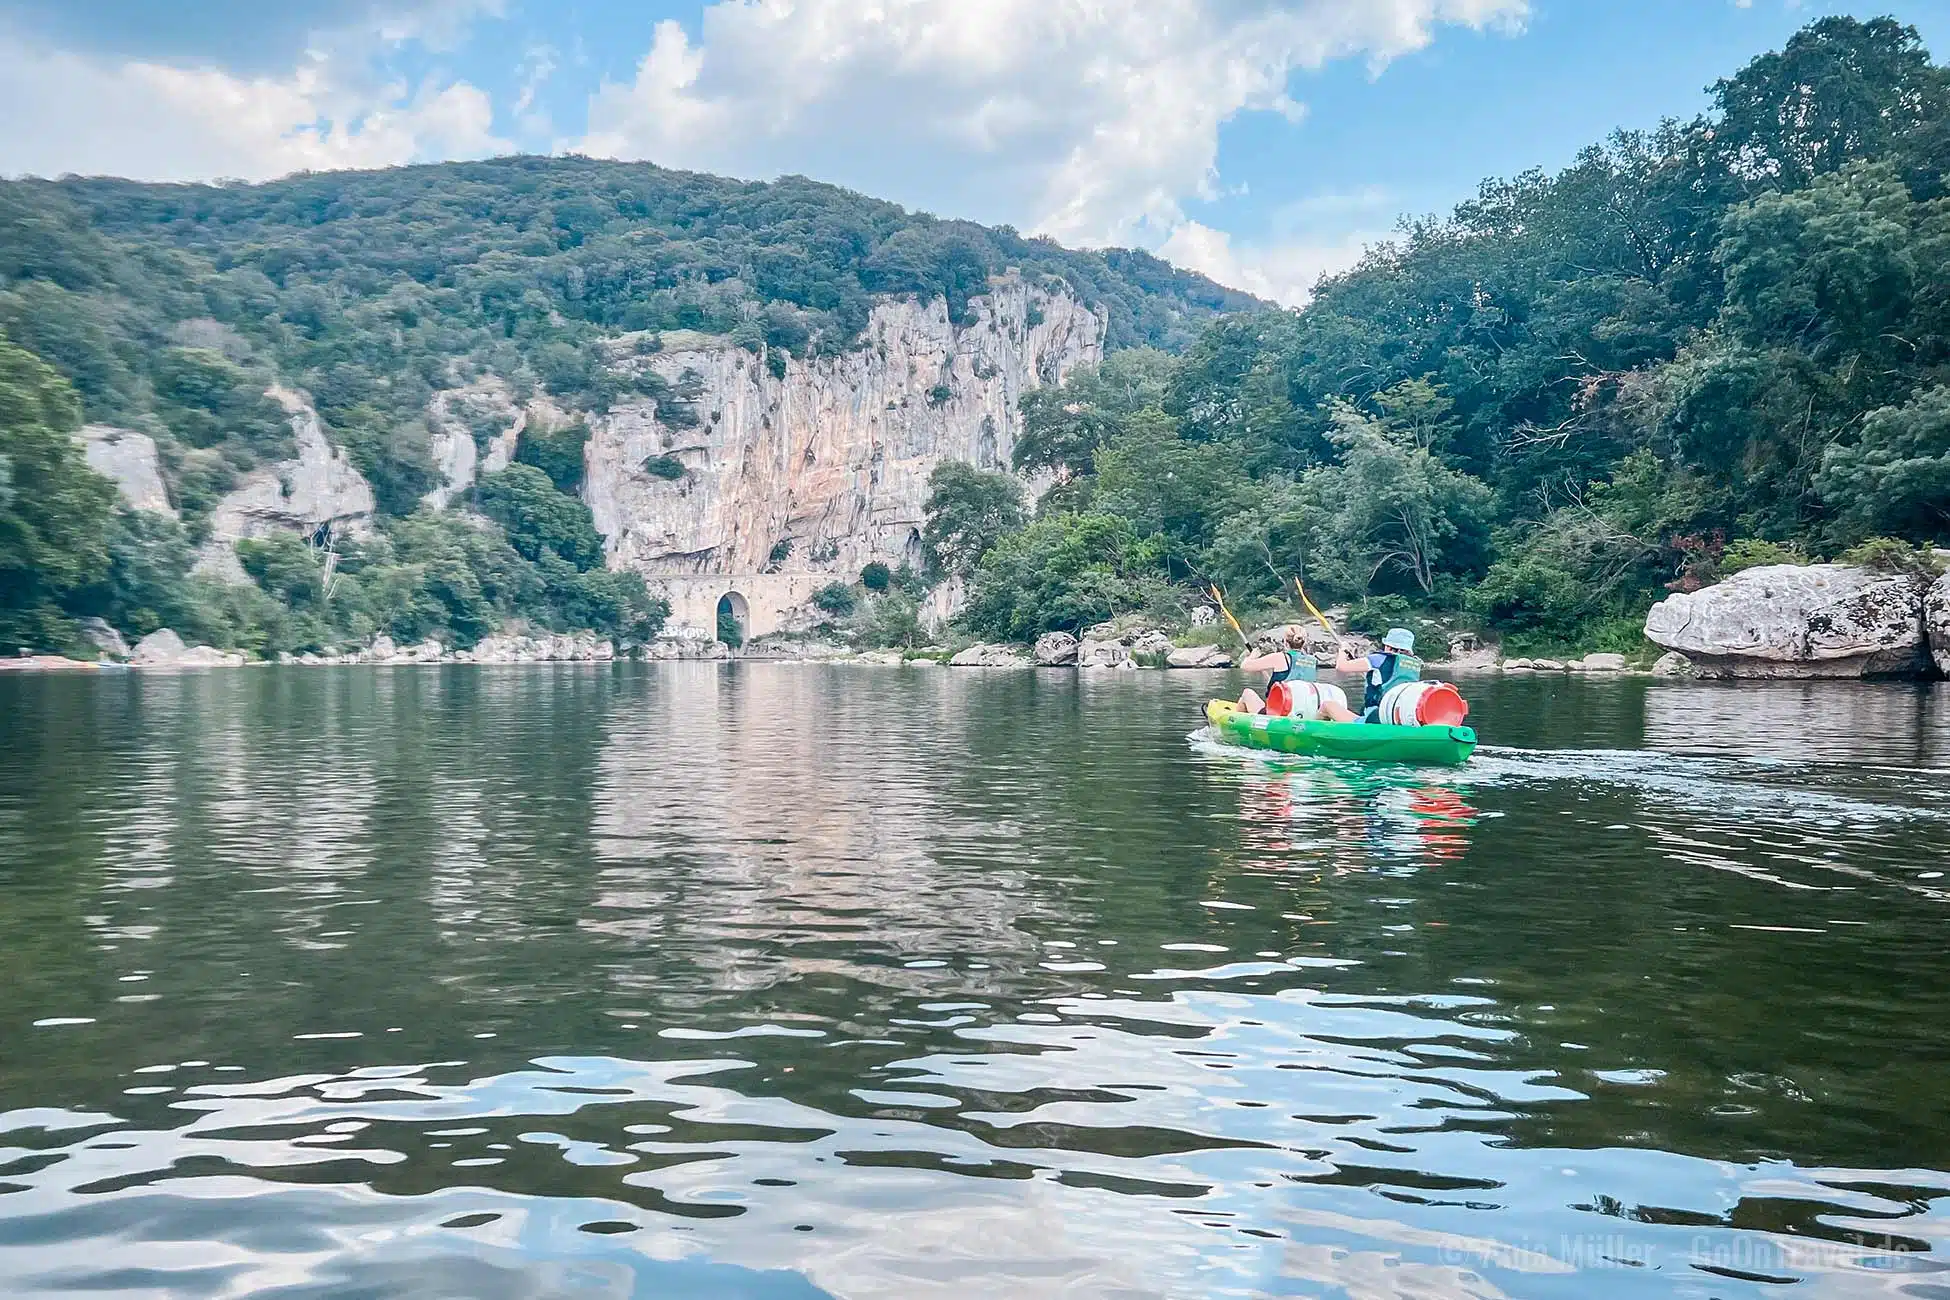 Die Ardèche Schlucht ist offiziell geschütztes Naturschutzgebiet